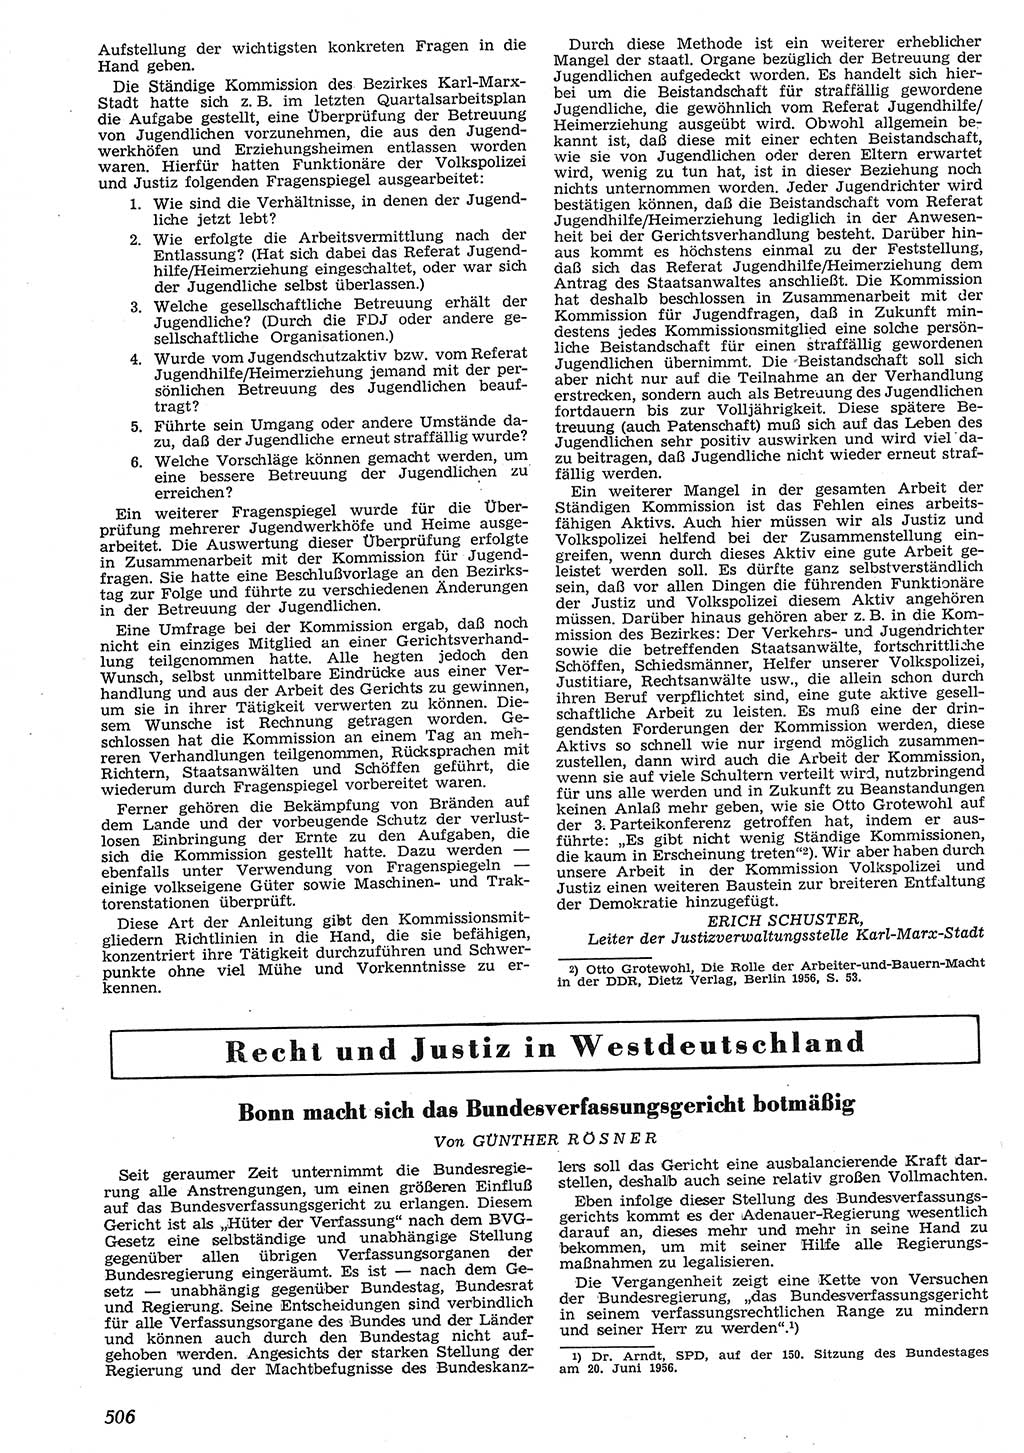 Neue Justiz (NJ), Zeitschrift für Recht und Rechtswissenschaft [Deutsche Demokratische Republik (DDR)], 10. Jahrgang 1956, Seite 506 (NJ DDR 1956, S. 506)